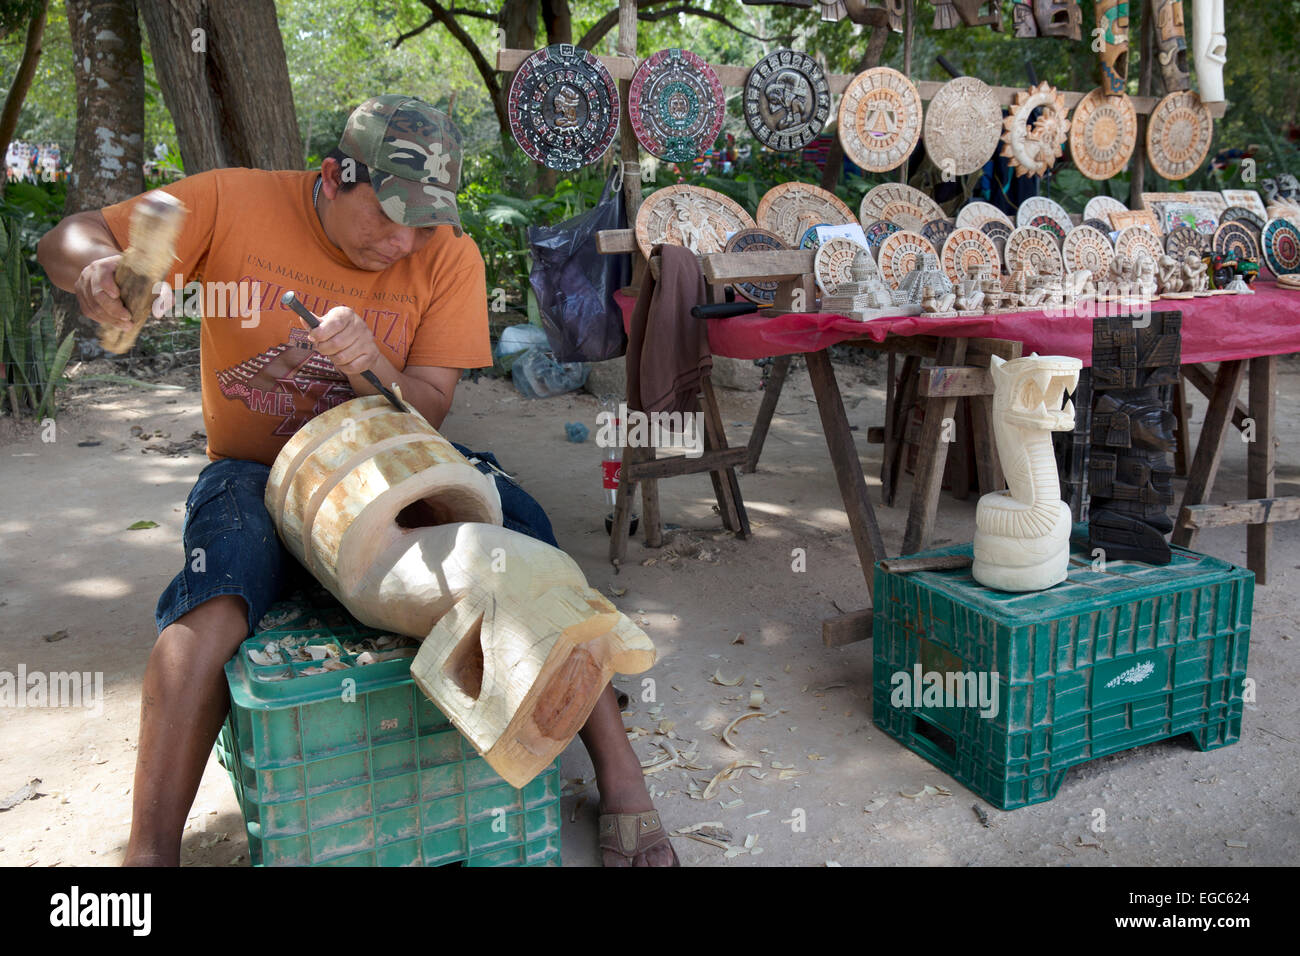 Craftsman carves tourist souvenirs, Chichen Itza, Yucatan, Mexico Stock Photo